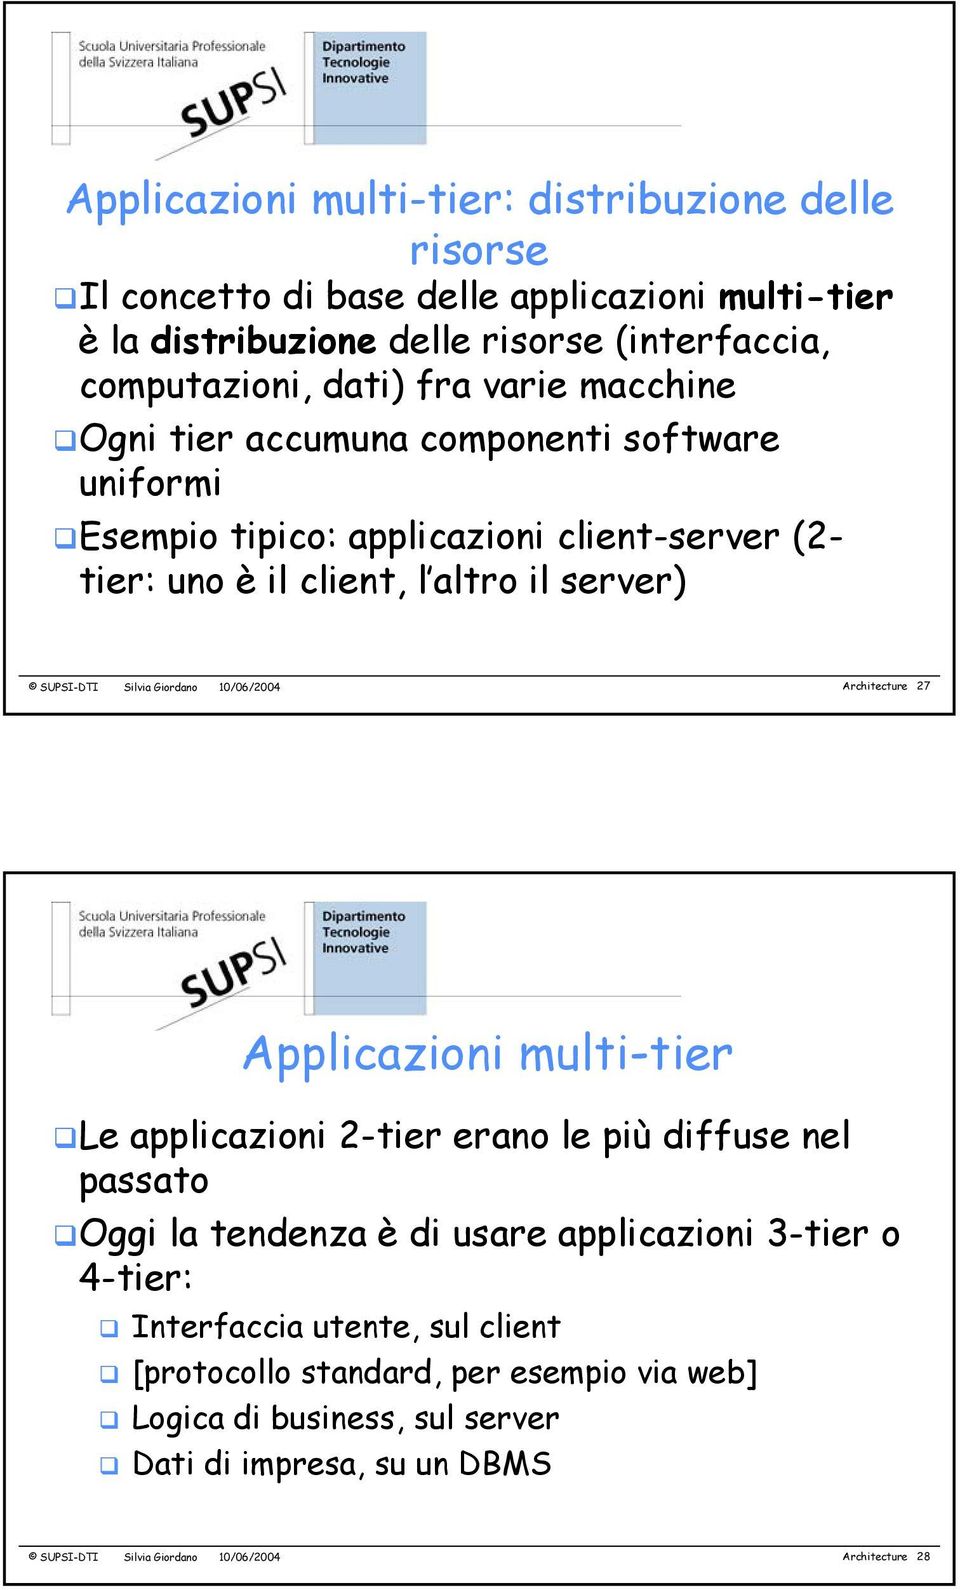 Giordano 10/06/2004 Architecture 27 Applicazioni multi-tier Le applicazioni 2-tier erano le più diffuse nel passato Oggi la tendenza è di usare applicazioni 3-tier o 4-tier: